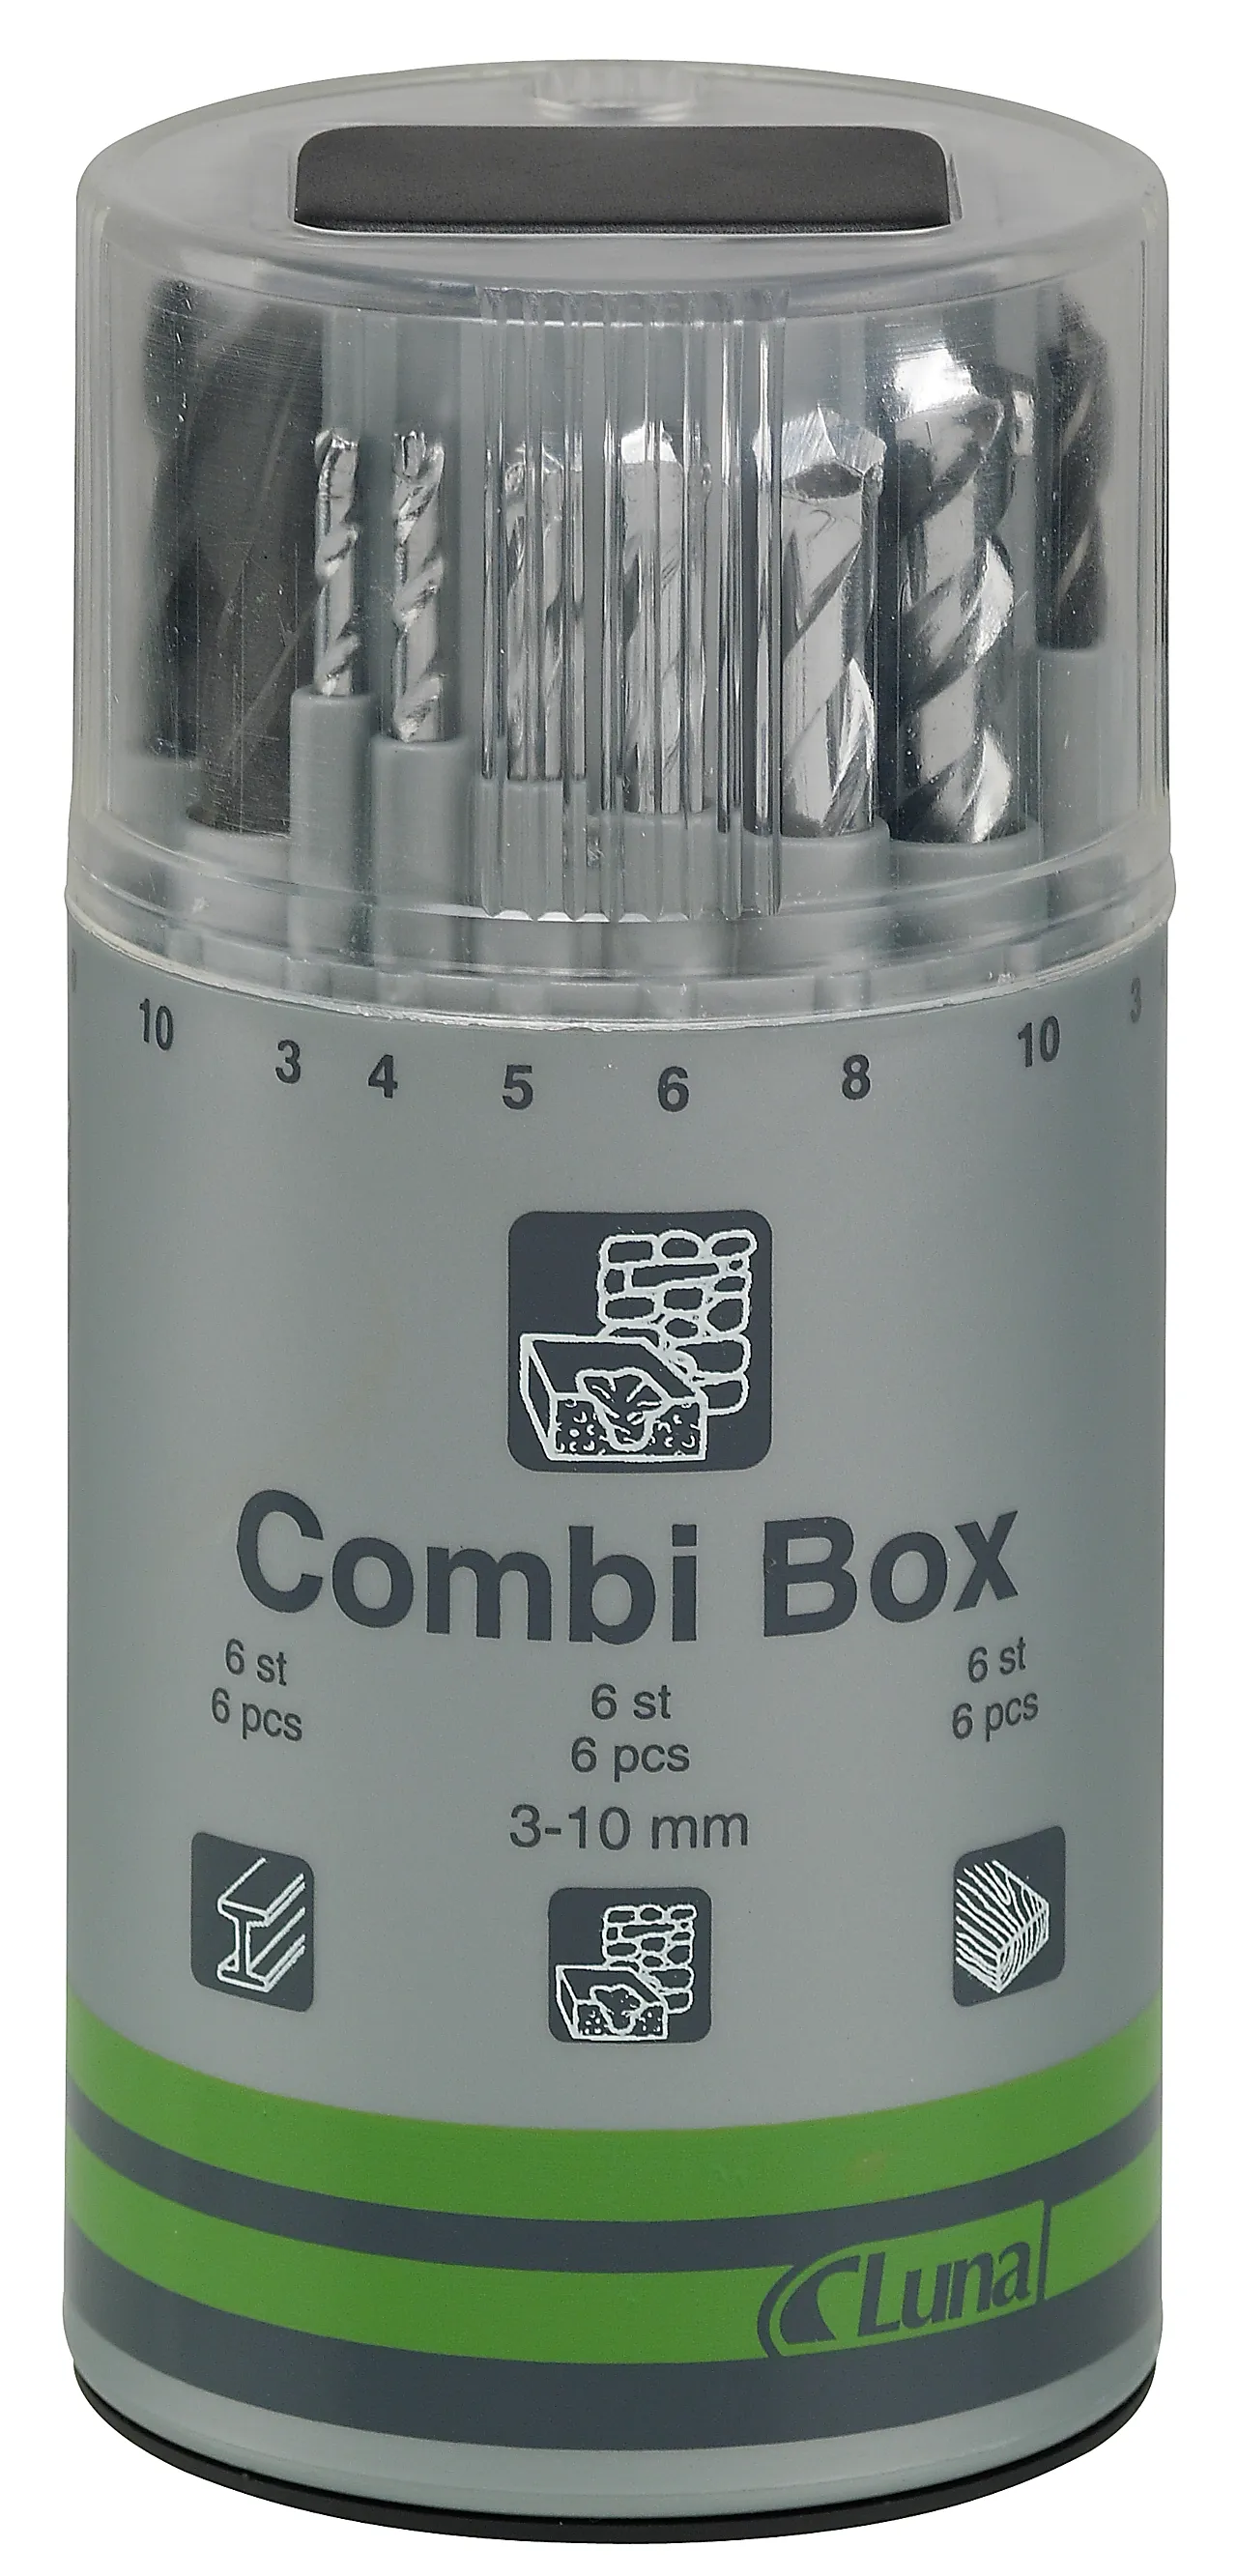 Borsett 3-10mm kombi-box